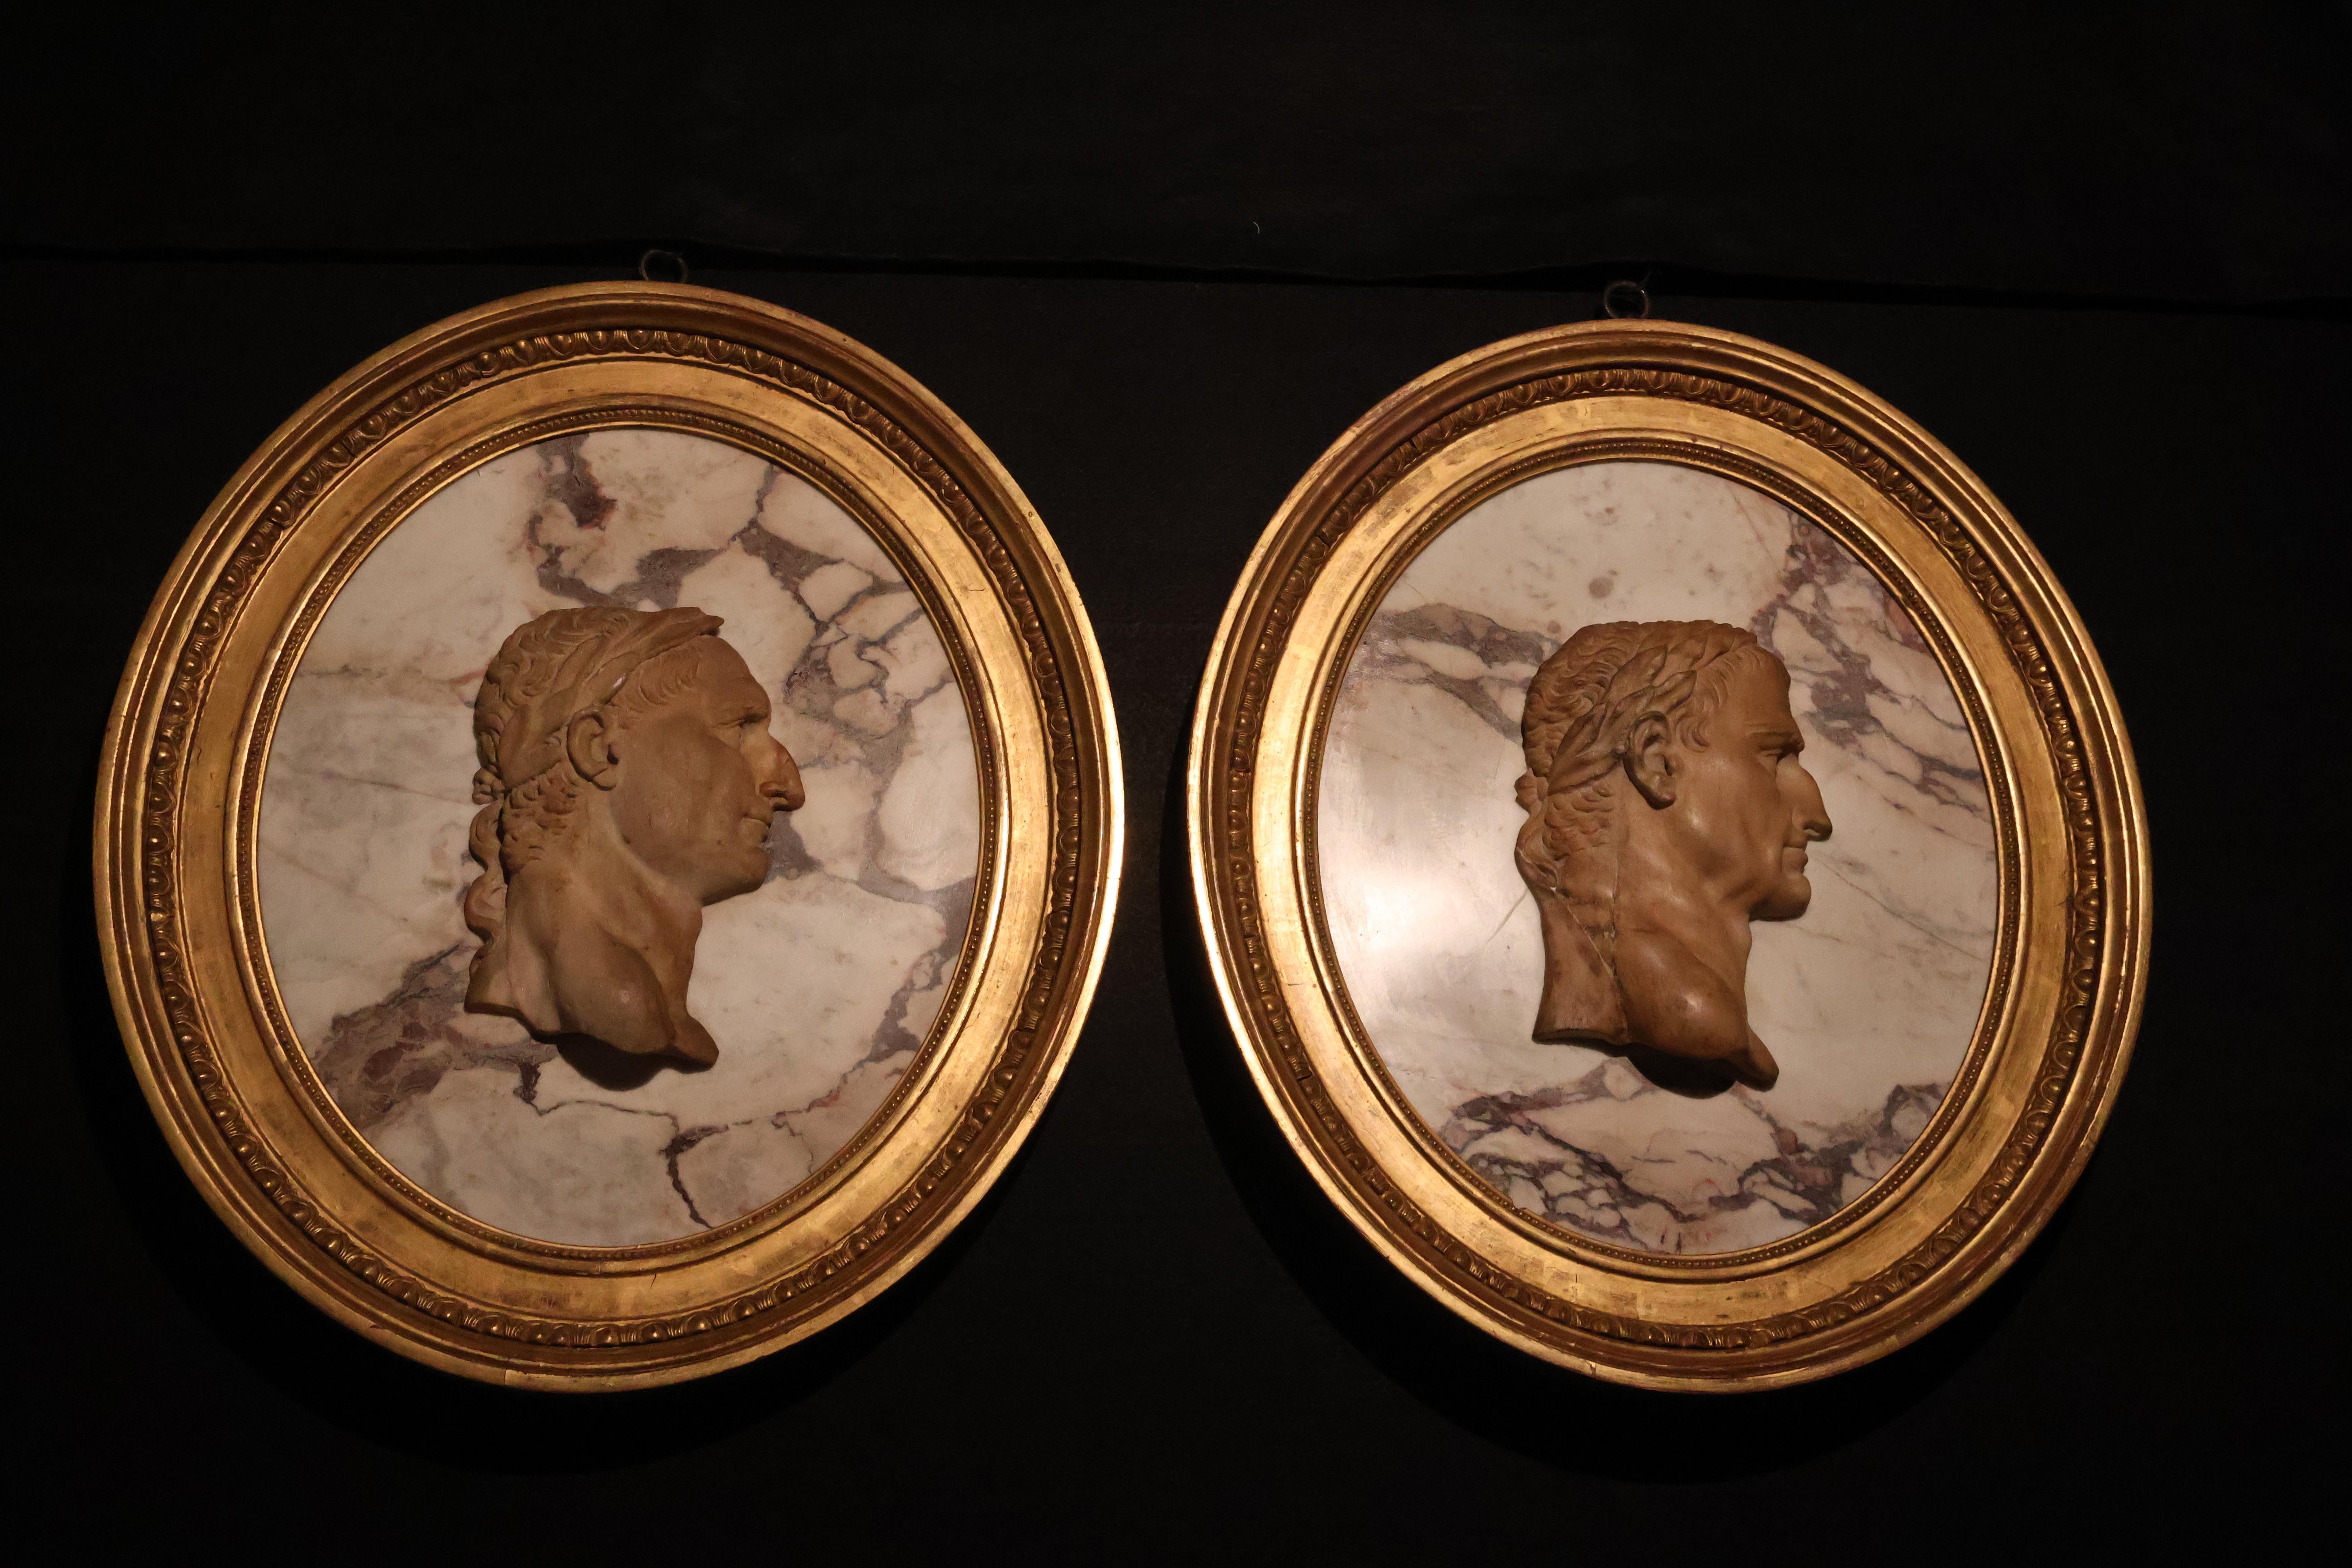 Ein hervorragendes Paar Breche Violette & Marmor Kameen, die römische Kaiser darstellen und in einem ovalen Rahmen aus Goldholz ruhen. Frankreich, um 1860.
CW5028